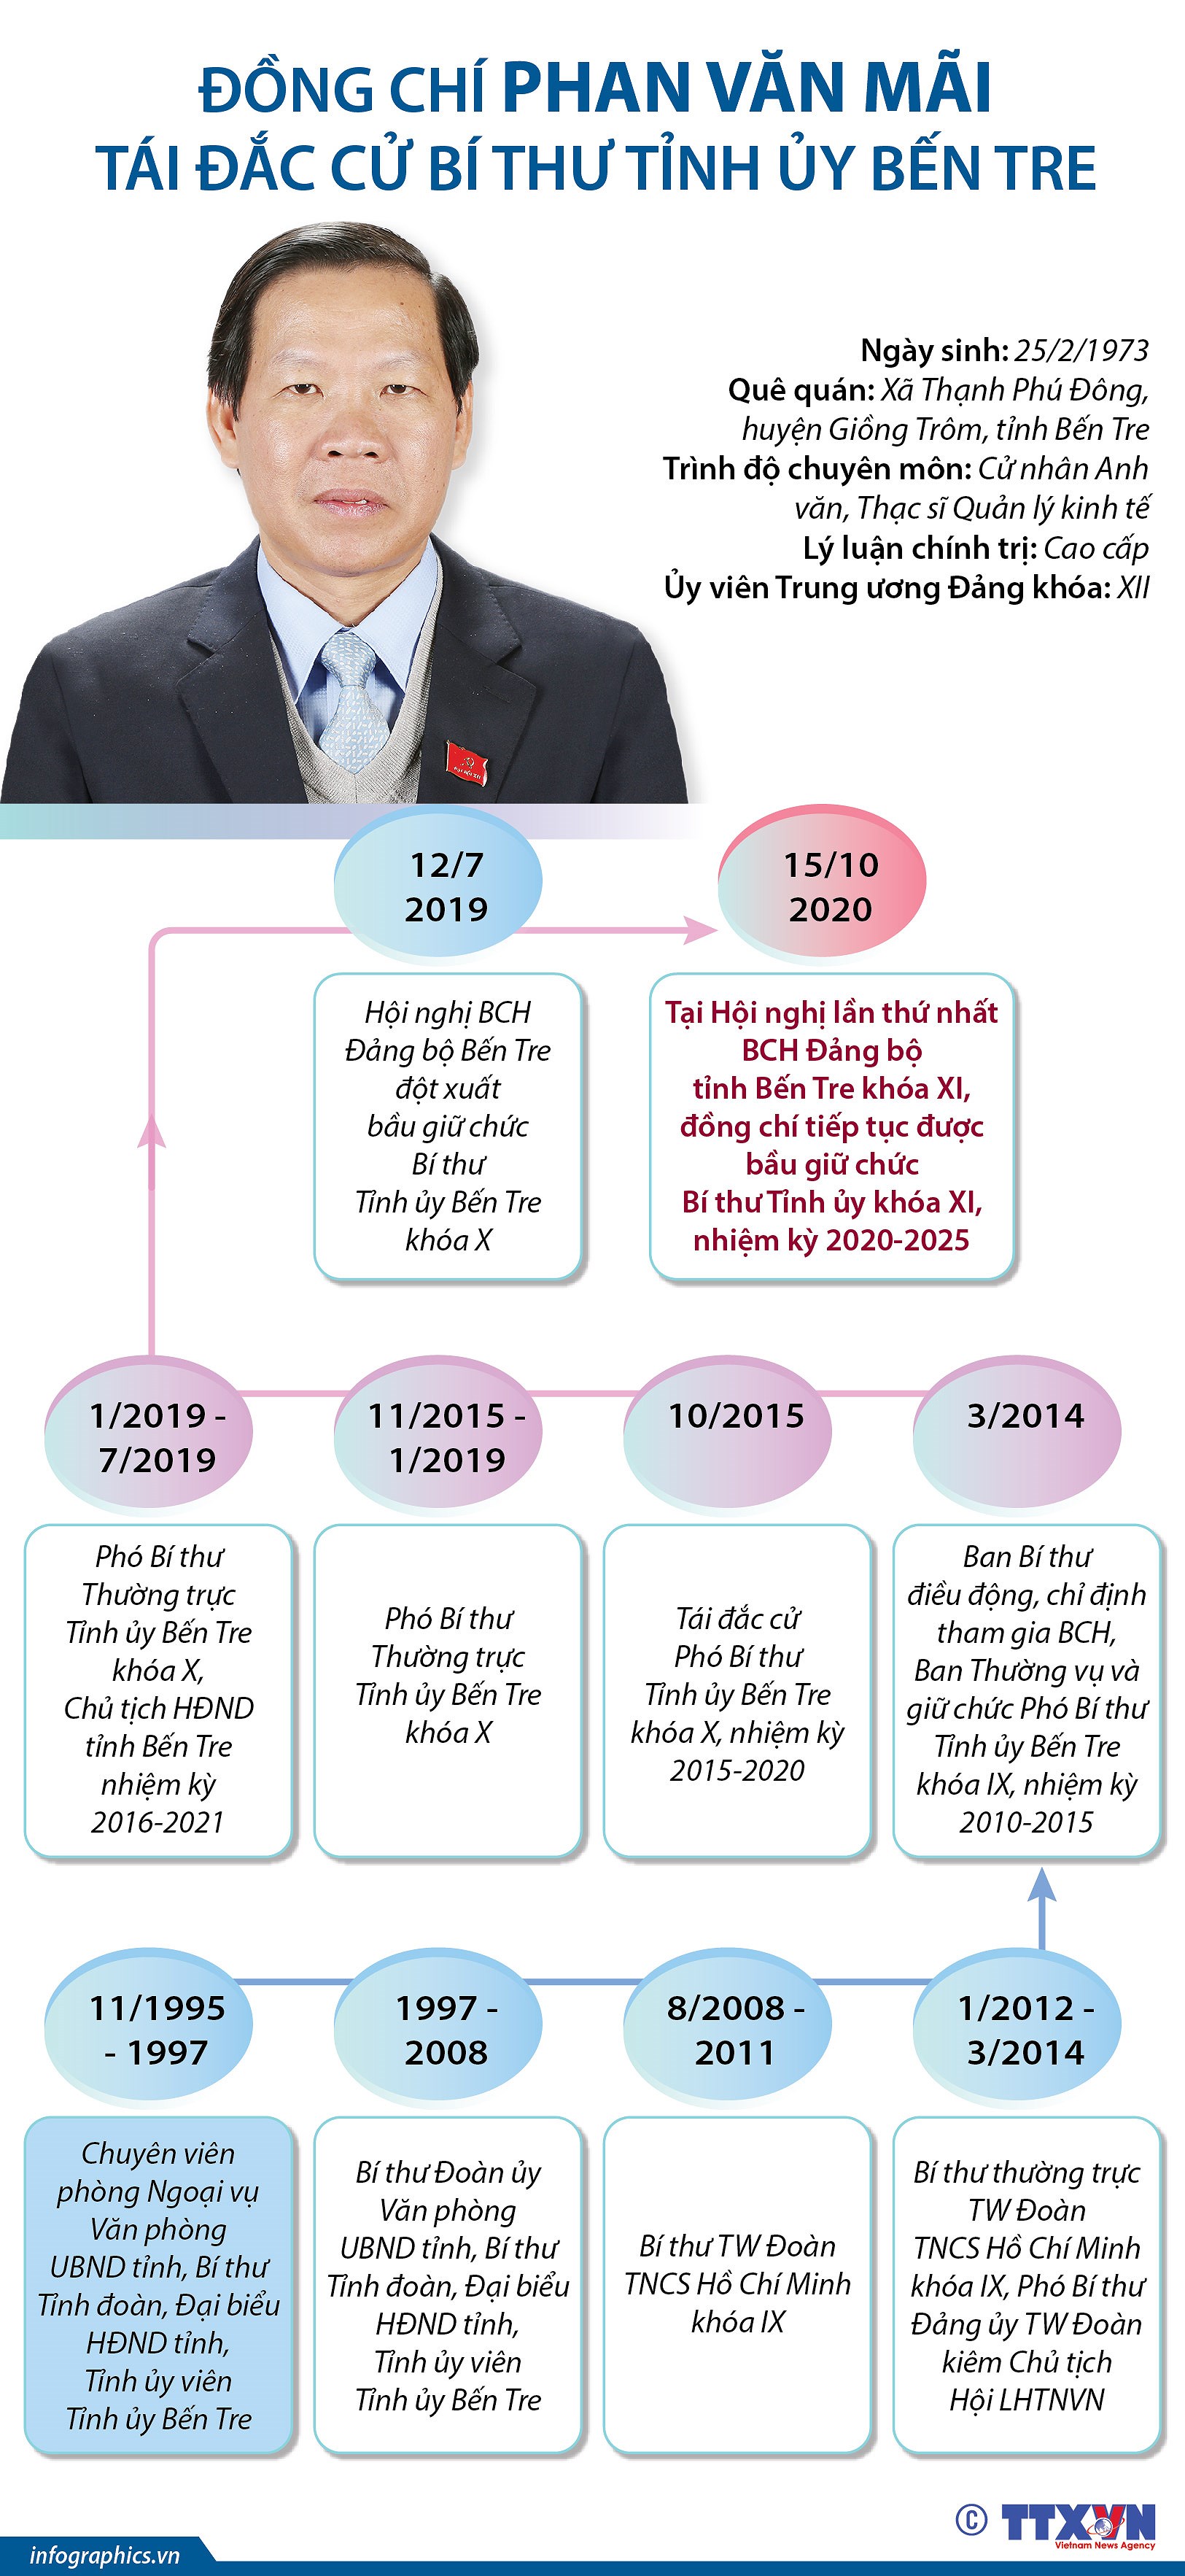 [Infographics] Ong Phan Van Mai giu chuc Bi thu Tinh uy Ben Tre hinh anh 1